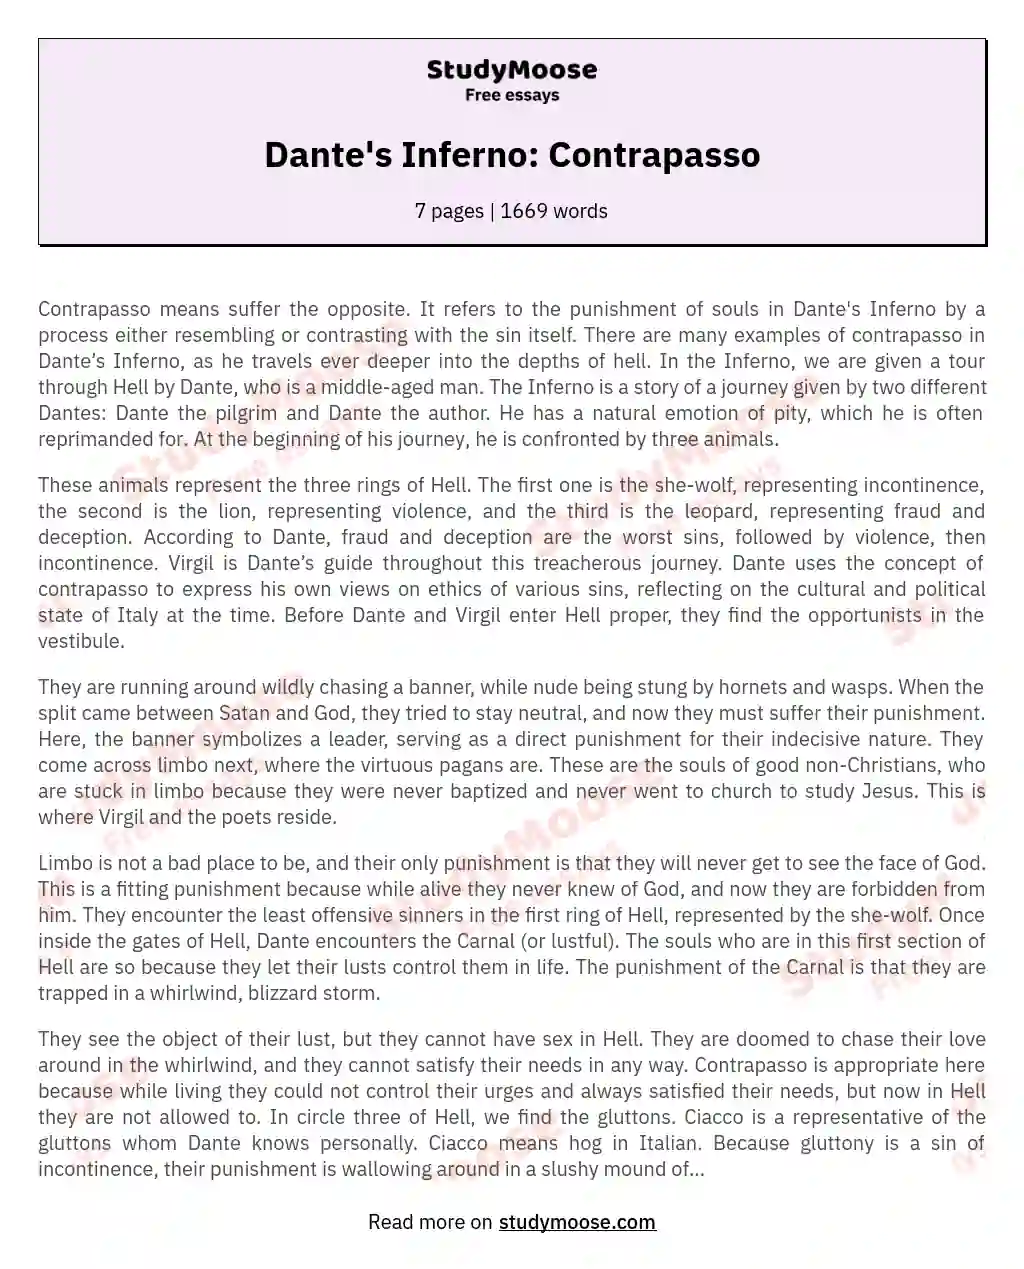 Dante's Inferno: Contrapasso essay